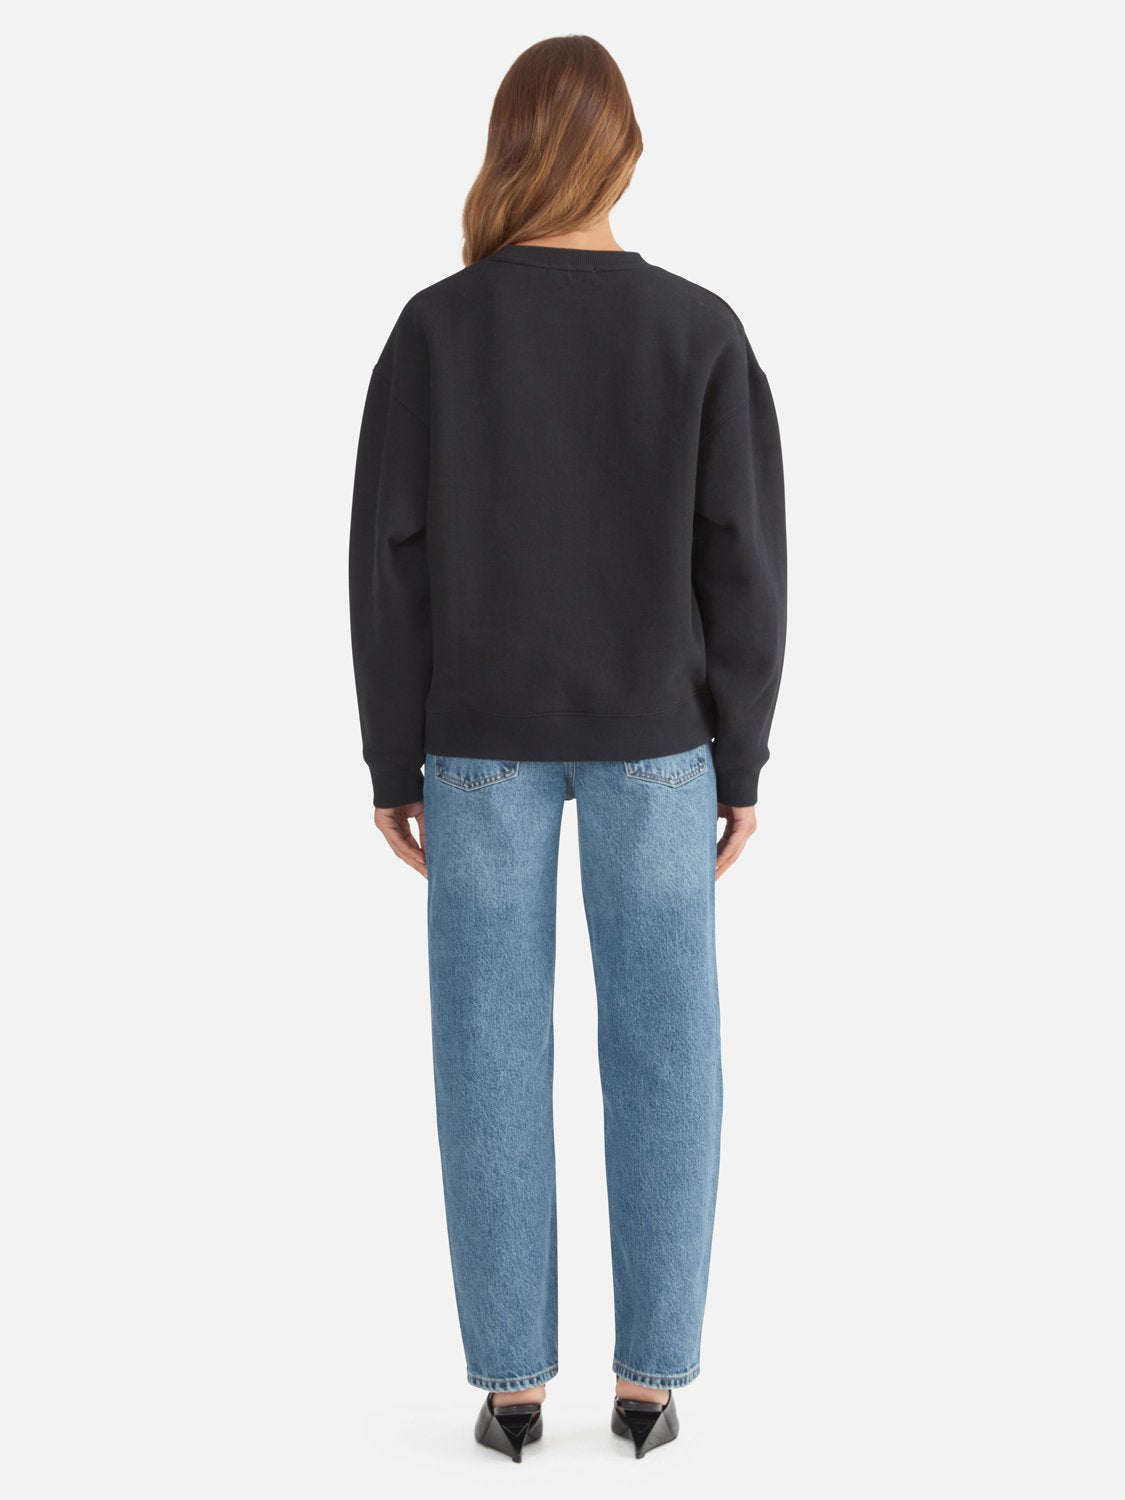 Lexi Monogram Sweater - Black